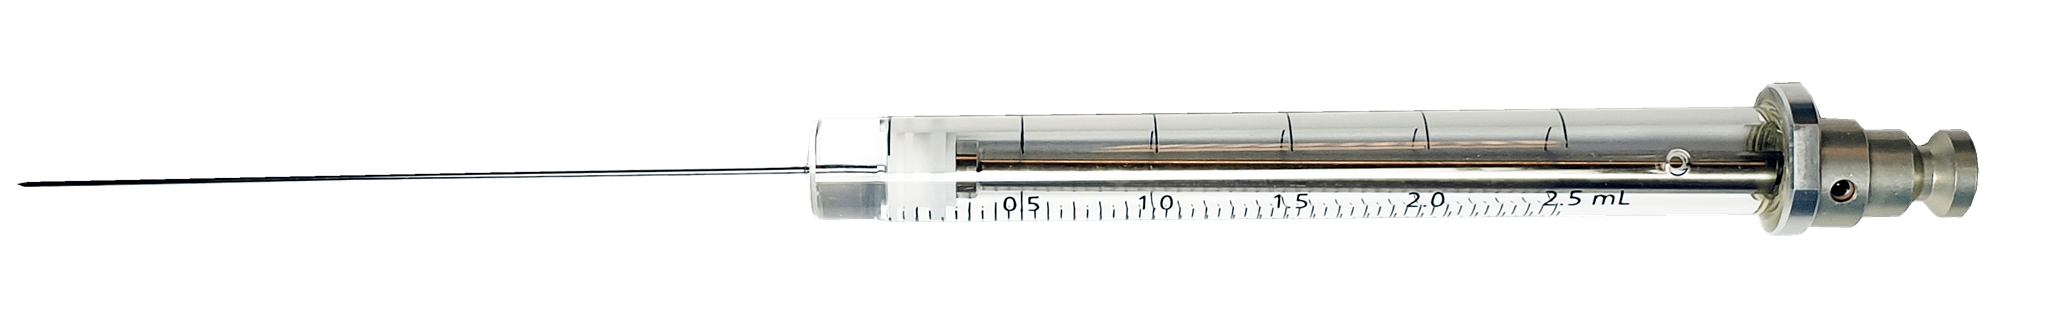 Bild von HS Syringe; 2.5 ml; gas tight; fixed needle;23G;65mm needle length;side hole dome